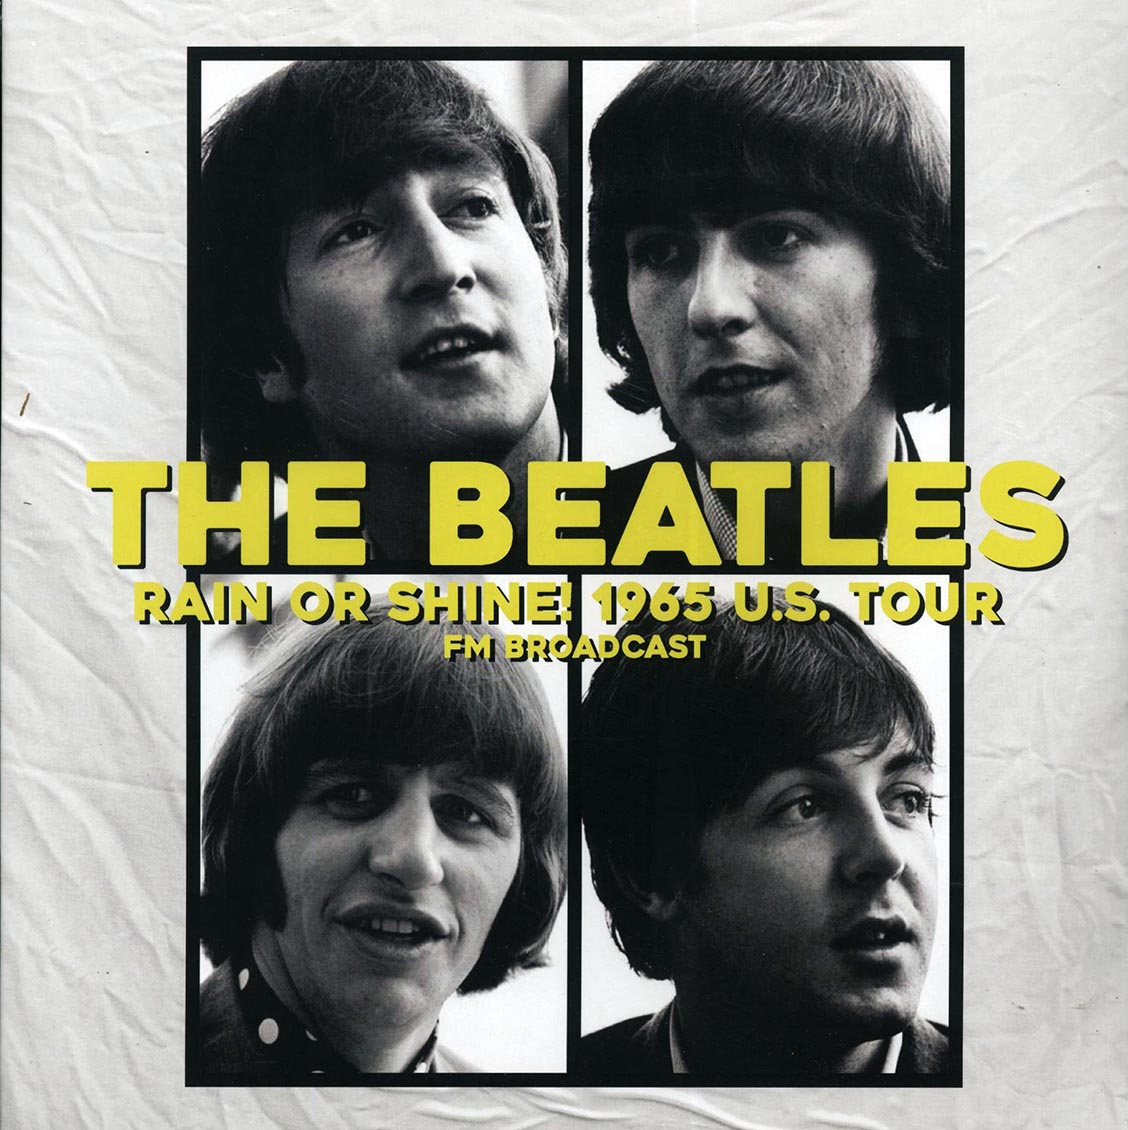 The Beatles - Rain Or Shine! 1965 US Tour FM Broadcast (ltd. 500 copies made) - Vinyl LP